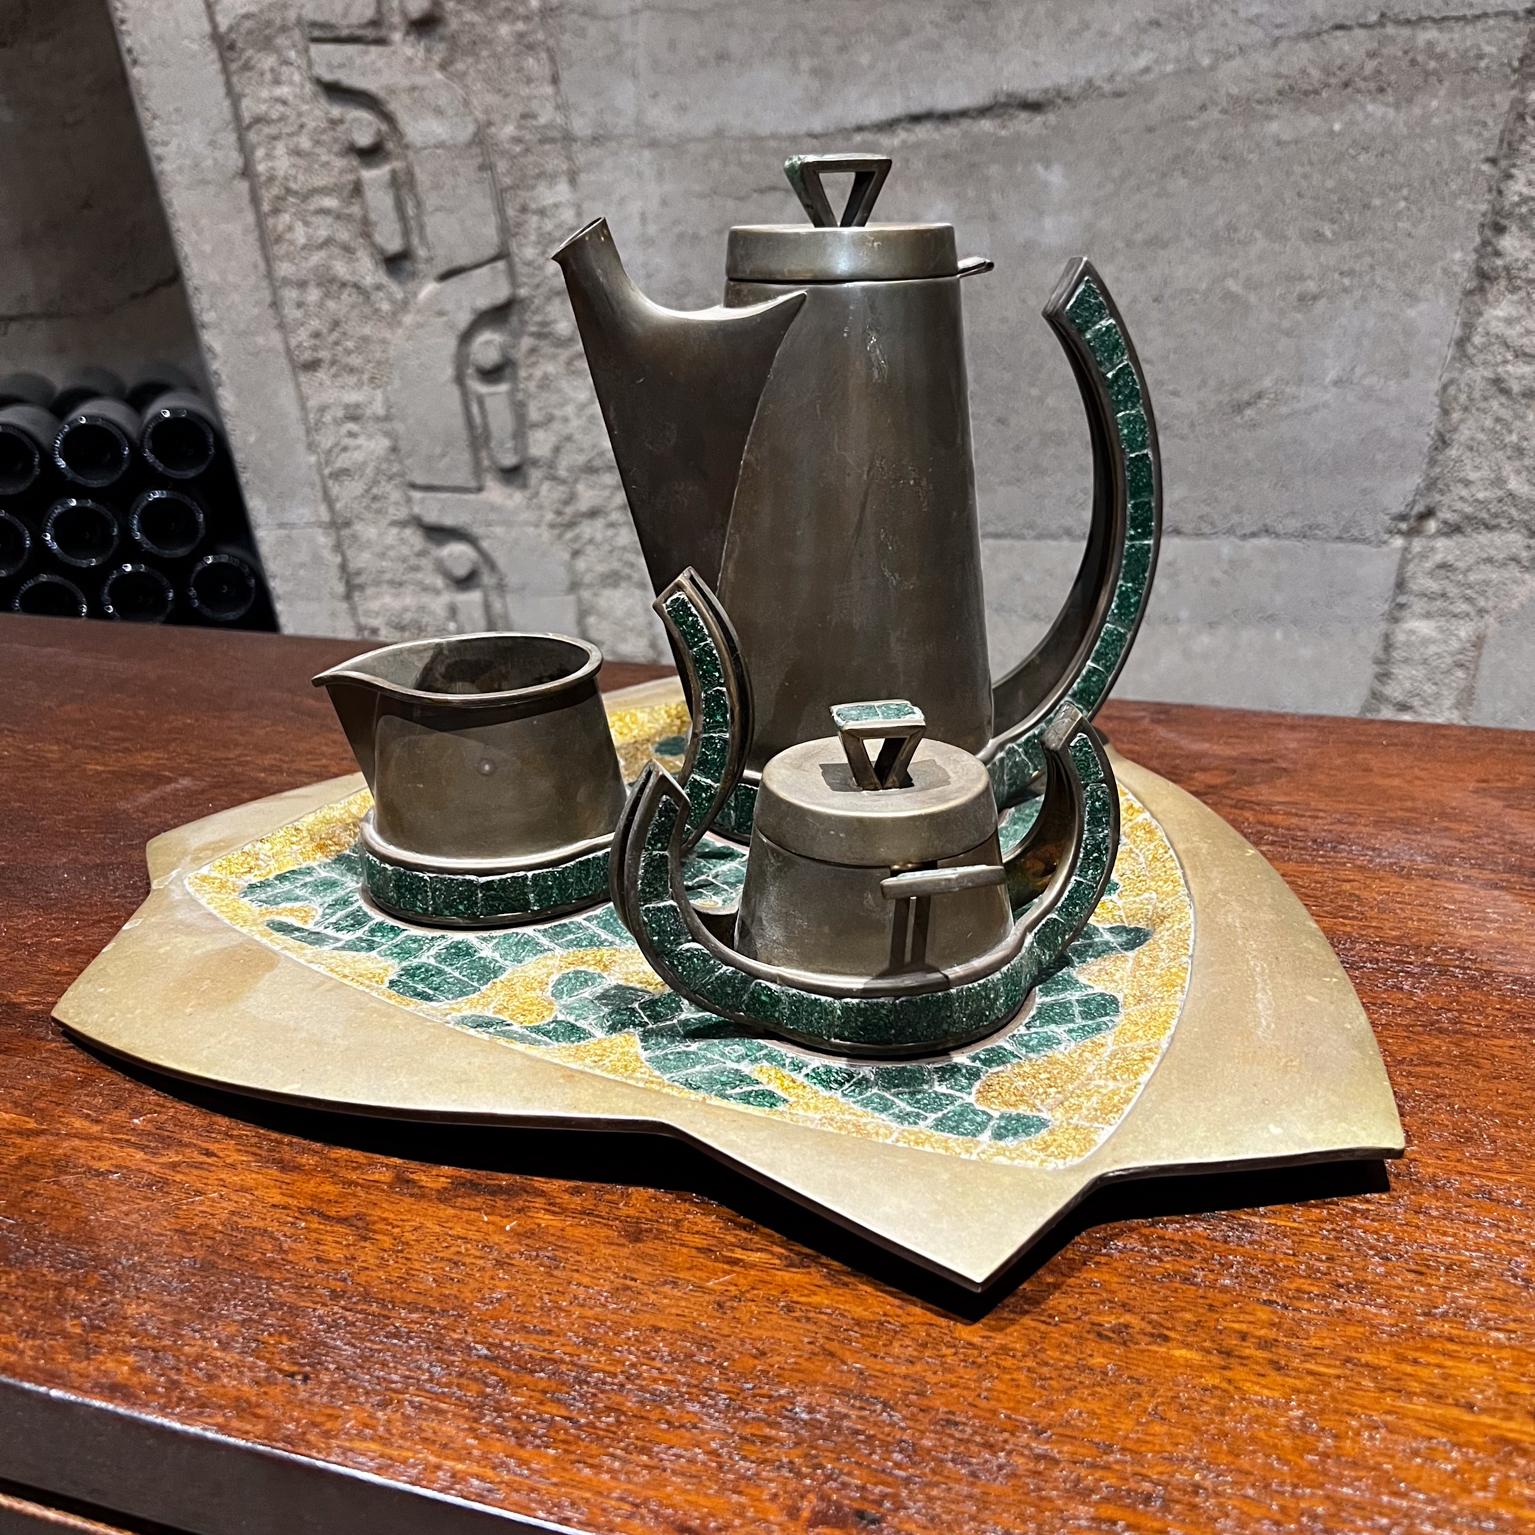 Fabuleux service à café et à thé fait à la main au Mexique par Salvador Teran, avec cuillère et plateau de service.
Ensemble de cinq pièces
Fabriqué à la main en laiton patiné avec une exquise mosaïque de pierres turquoises.
L'ensemble